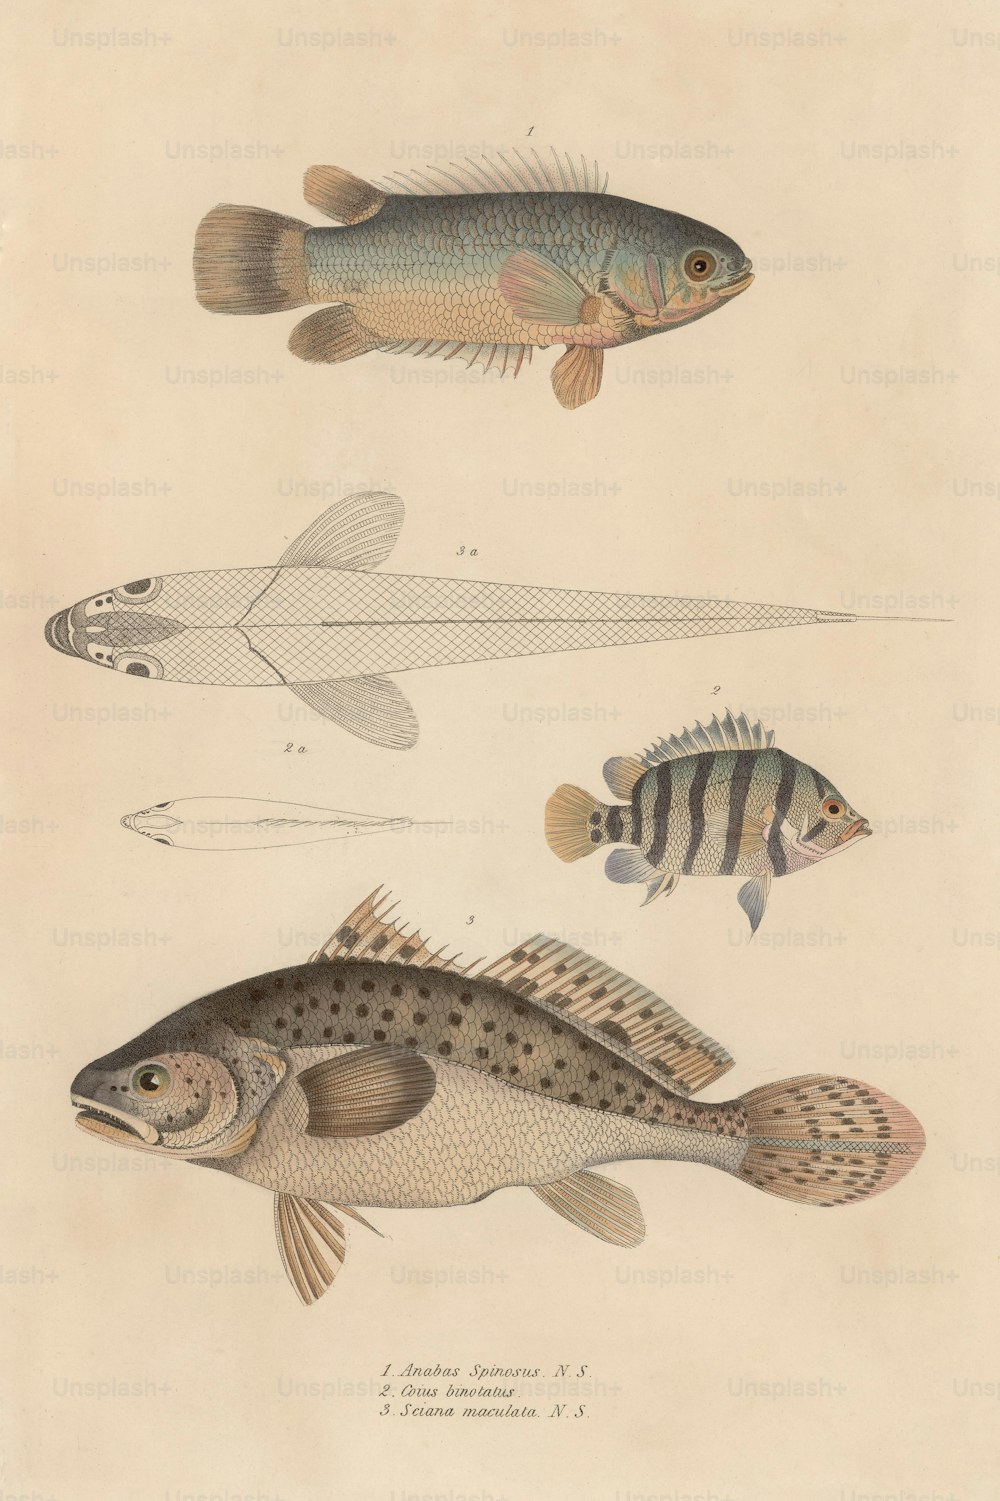 1850年頃、anabas spinosus、coius binotatus、sciana maculataなど、さまざまな魚。(写真提供:Hulton Archive/Getty Images)